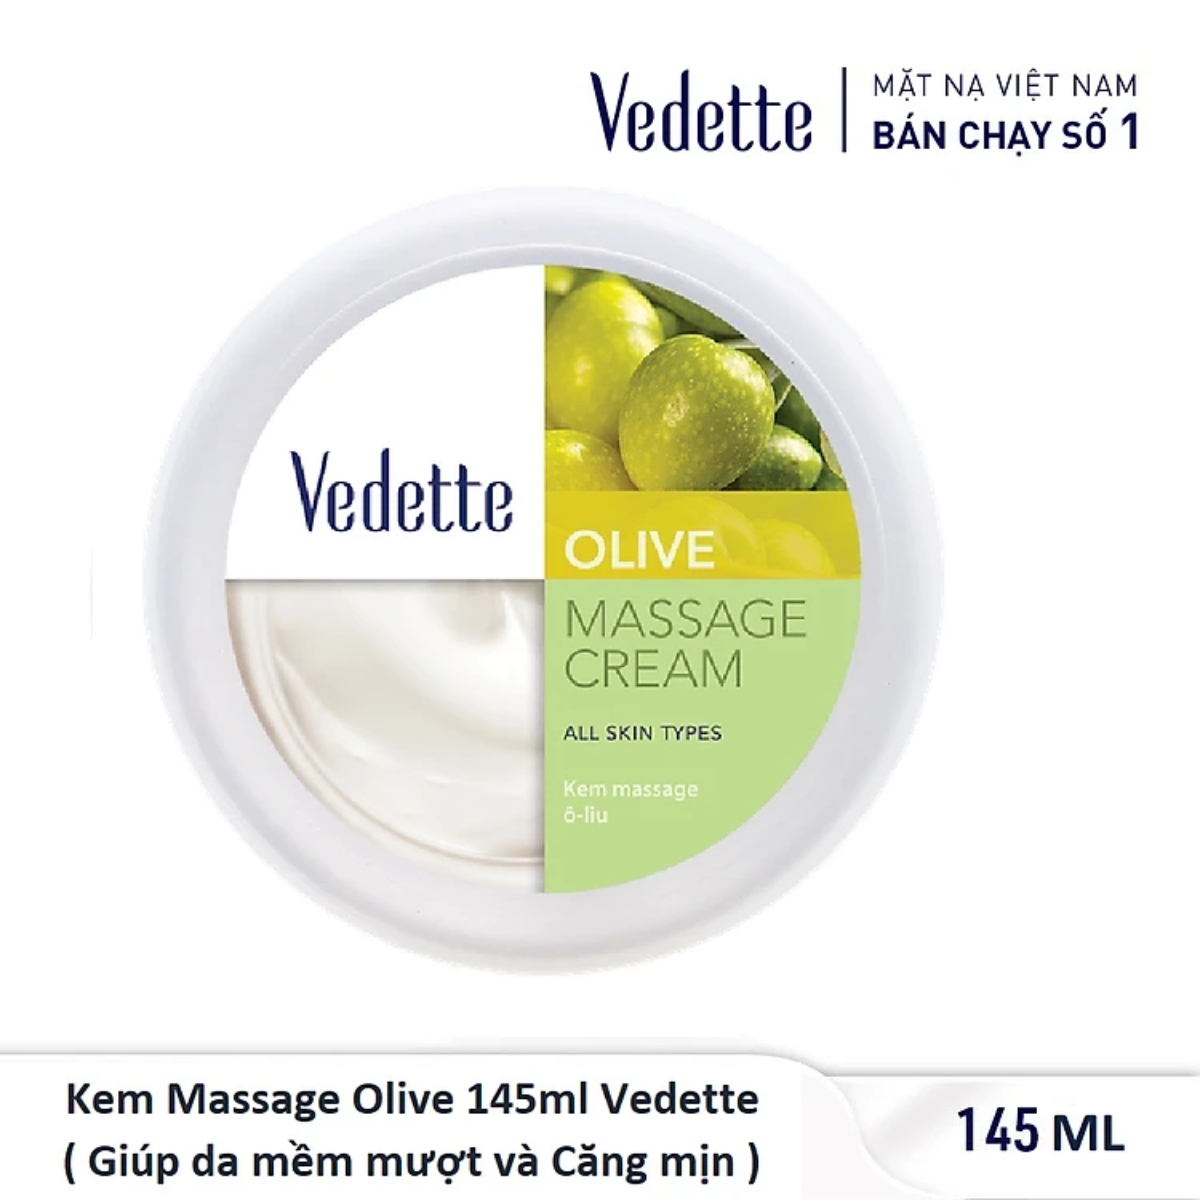 Kem massage Vedette Olive 145ml